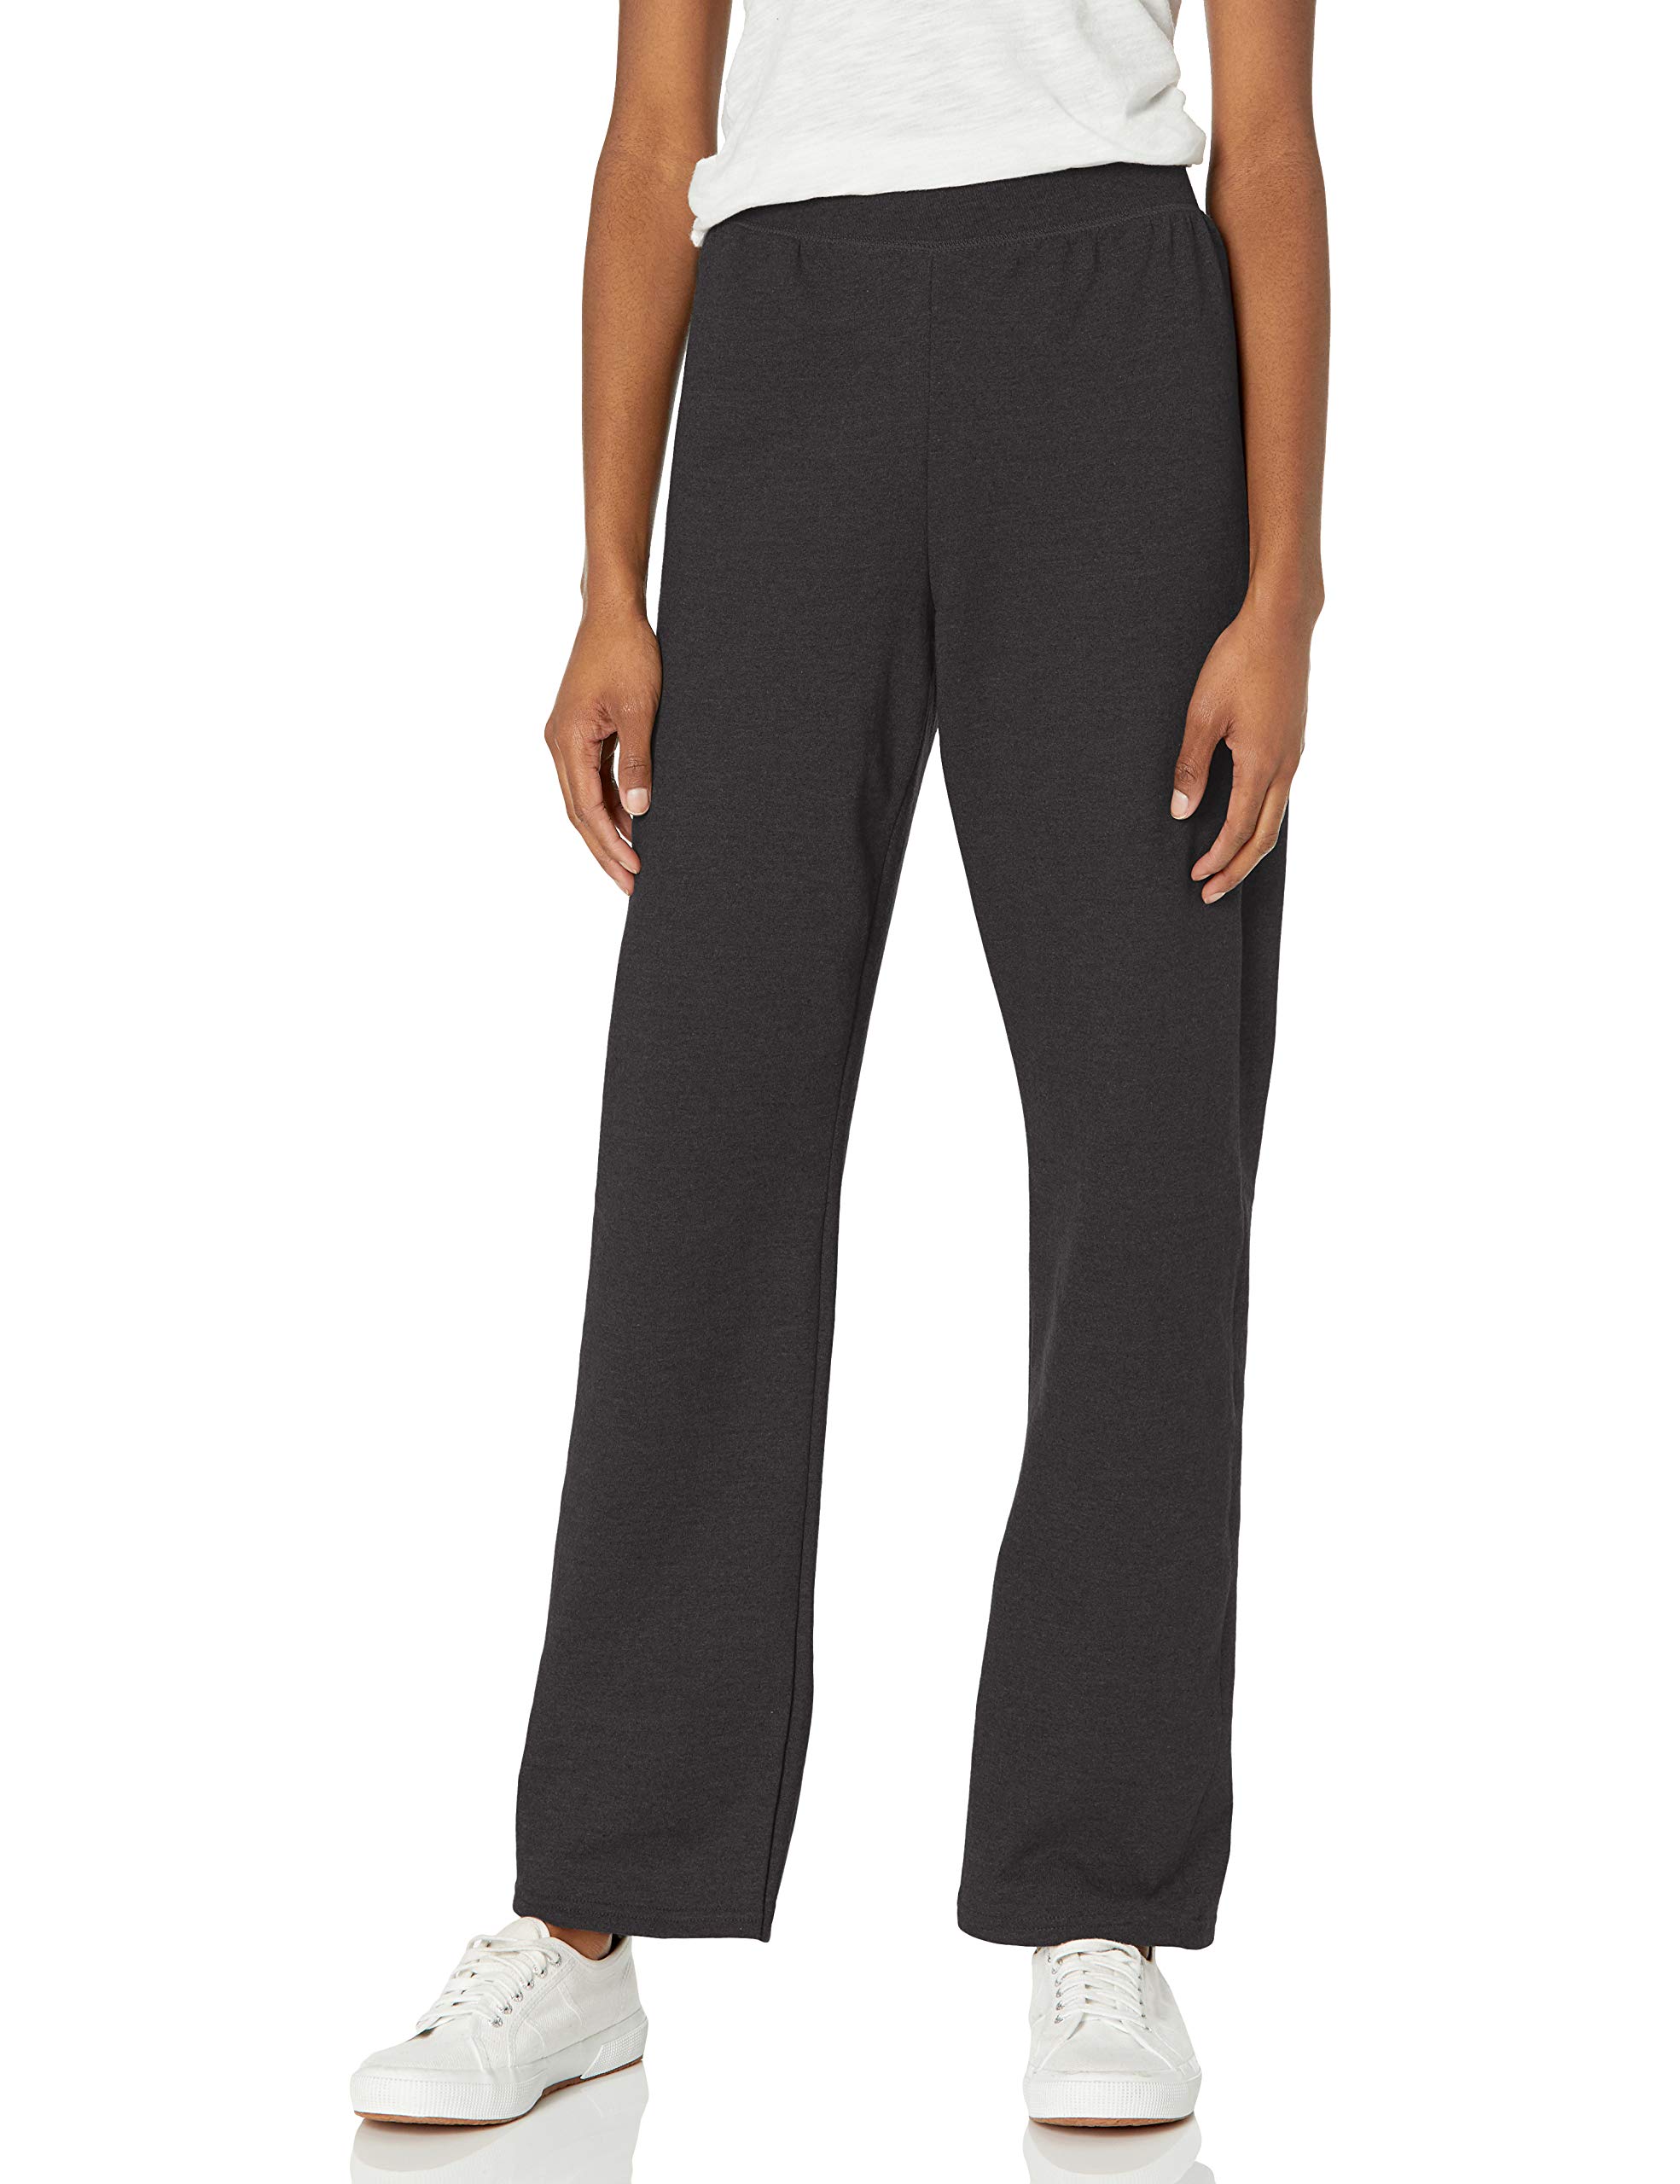 Hanes Women's EcoSmart Fleece Petite Sweatpants (Ebony) $5.96 + Free Shipping w/ Prime or on $35+